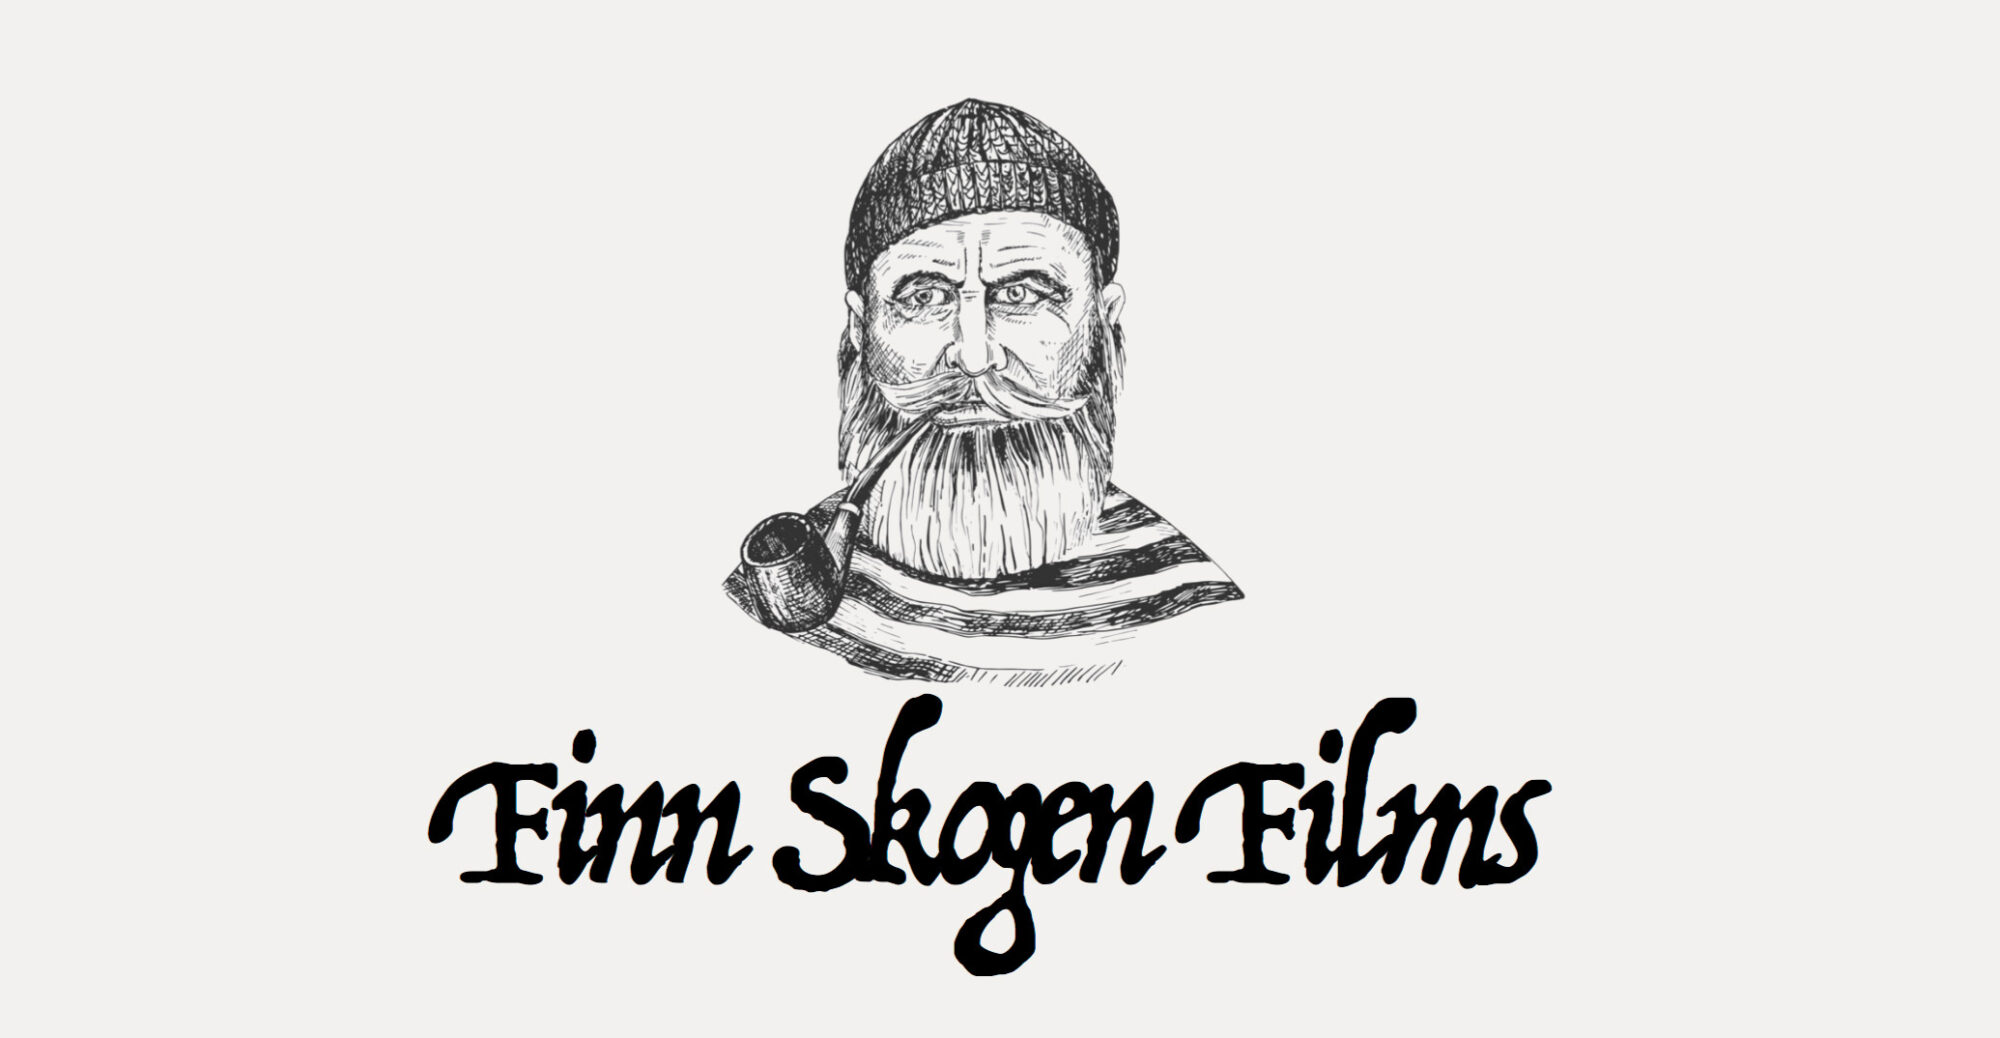 Finn Skogen Films